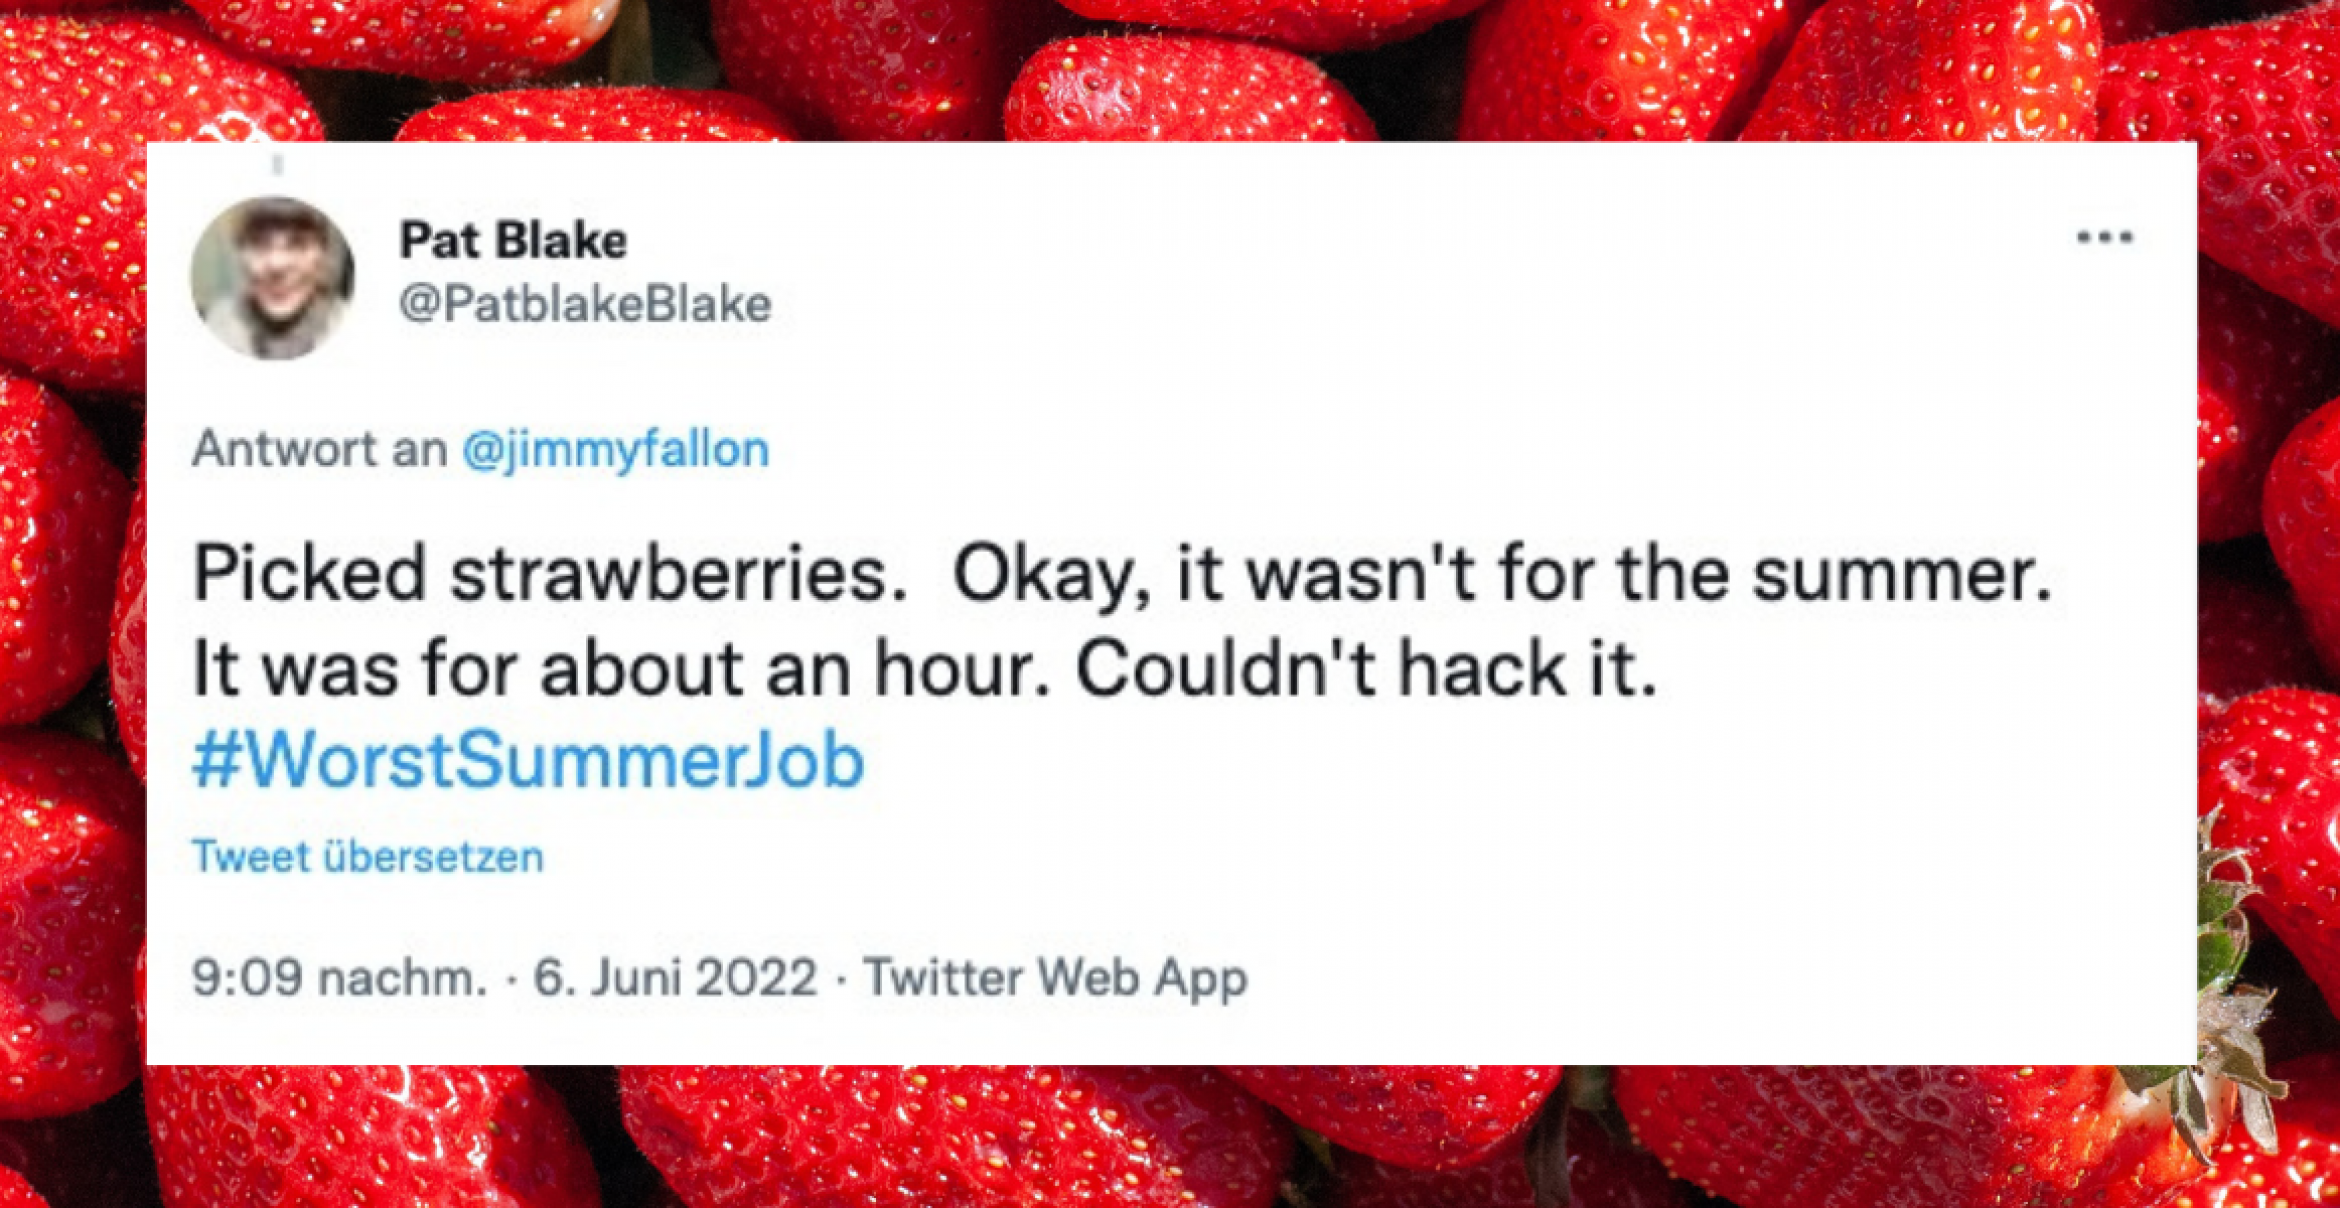 Sommer, Sonne, scheiss Job: Auf Twitter teilen Menschen ihre Erfahrungen mit Aushilfsjobs